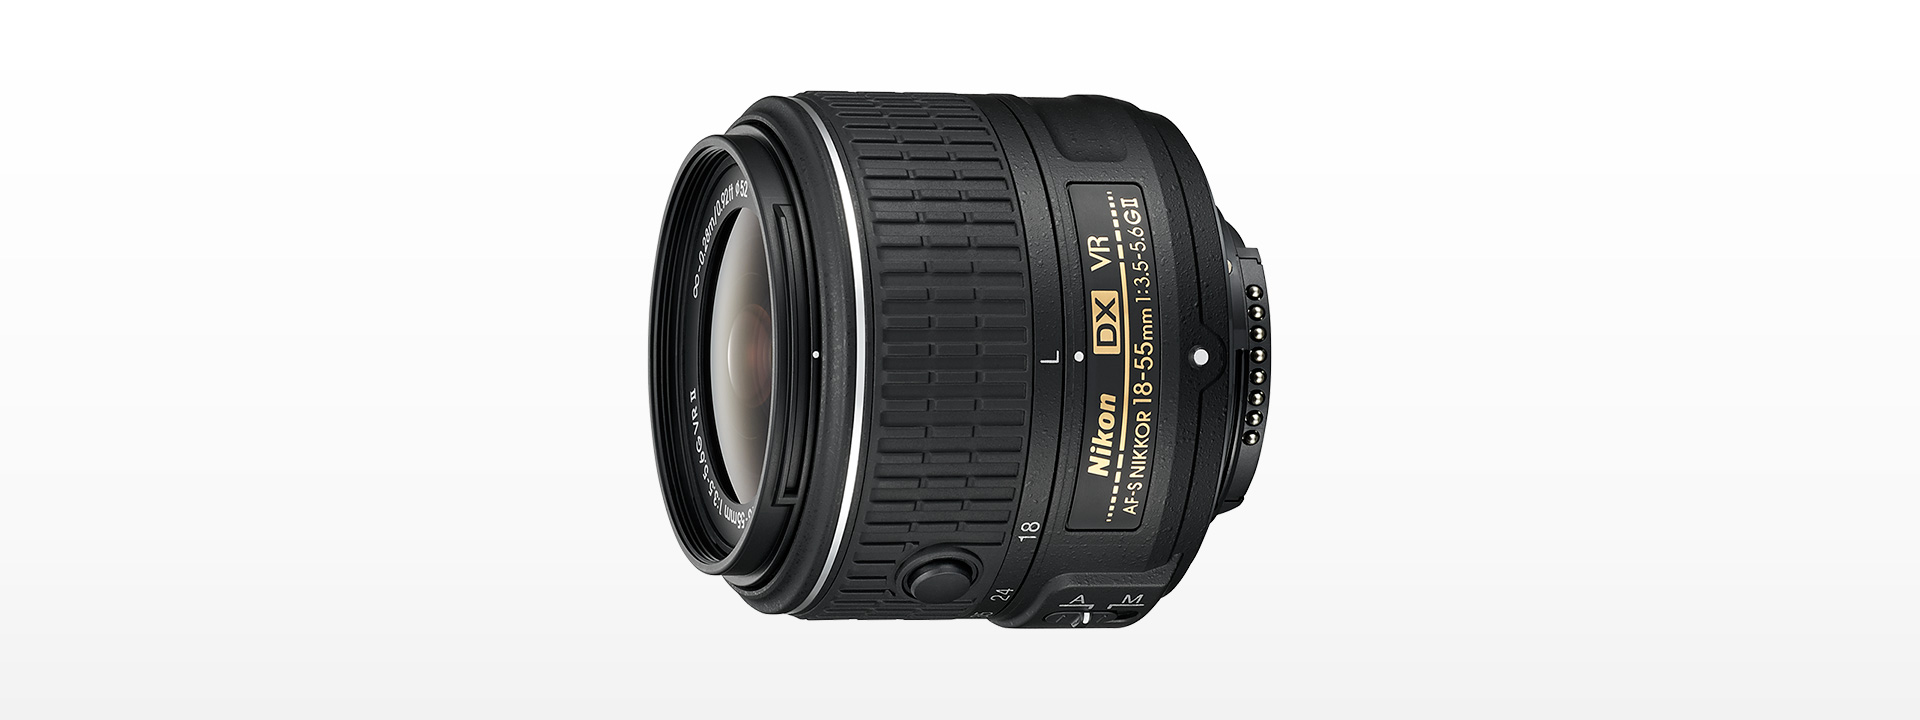 i82)Nikon D60 18-55 VR Kit AF-S DX NIKKOR 18-55mm f/3.5-5.6G VR